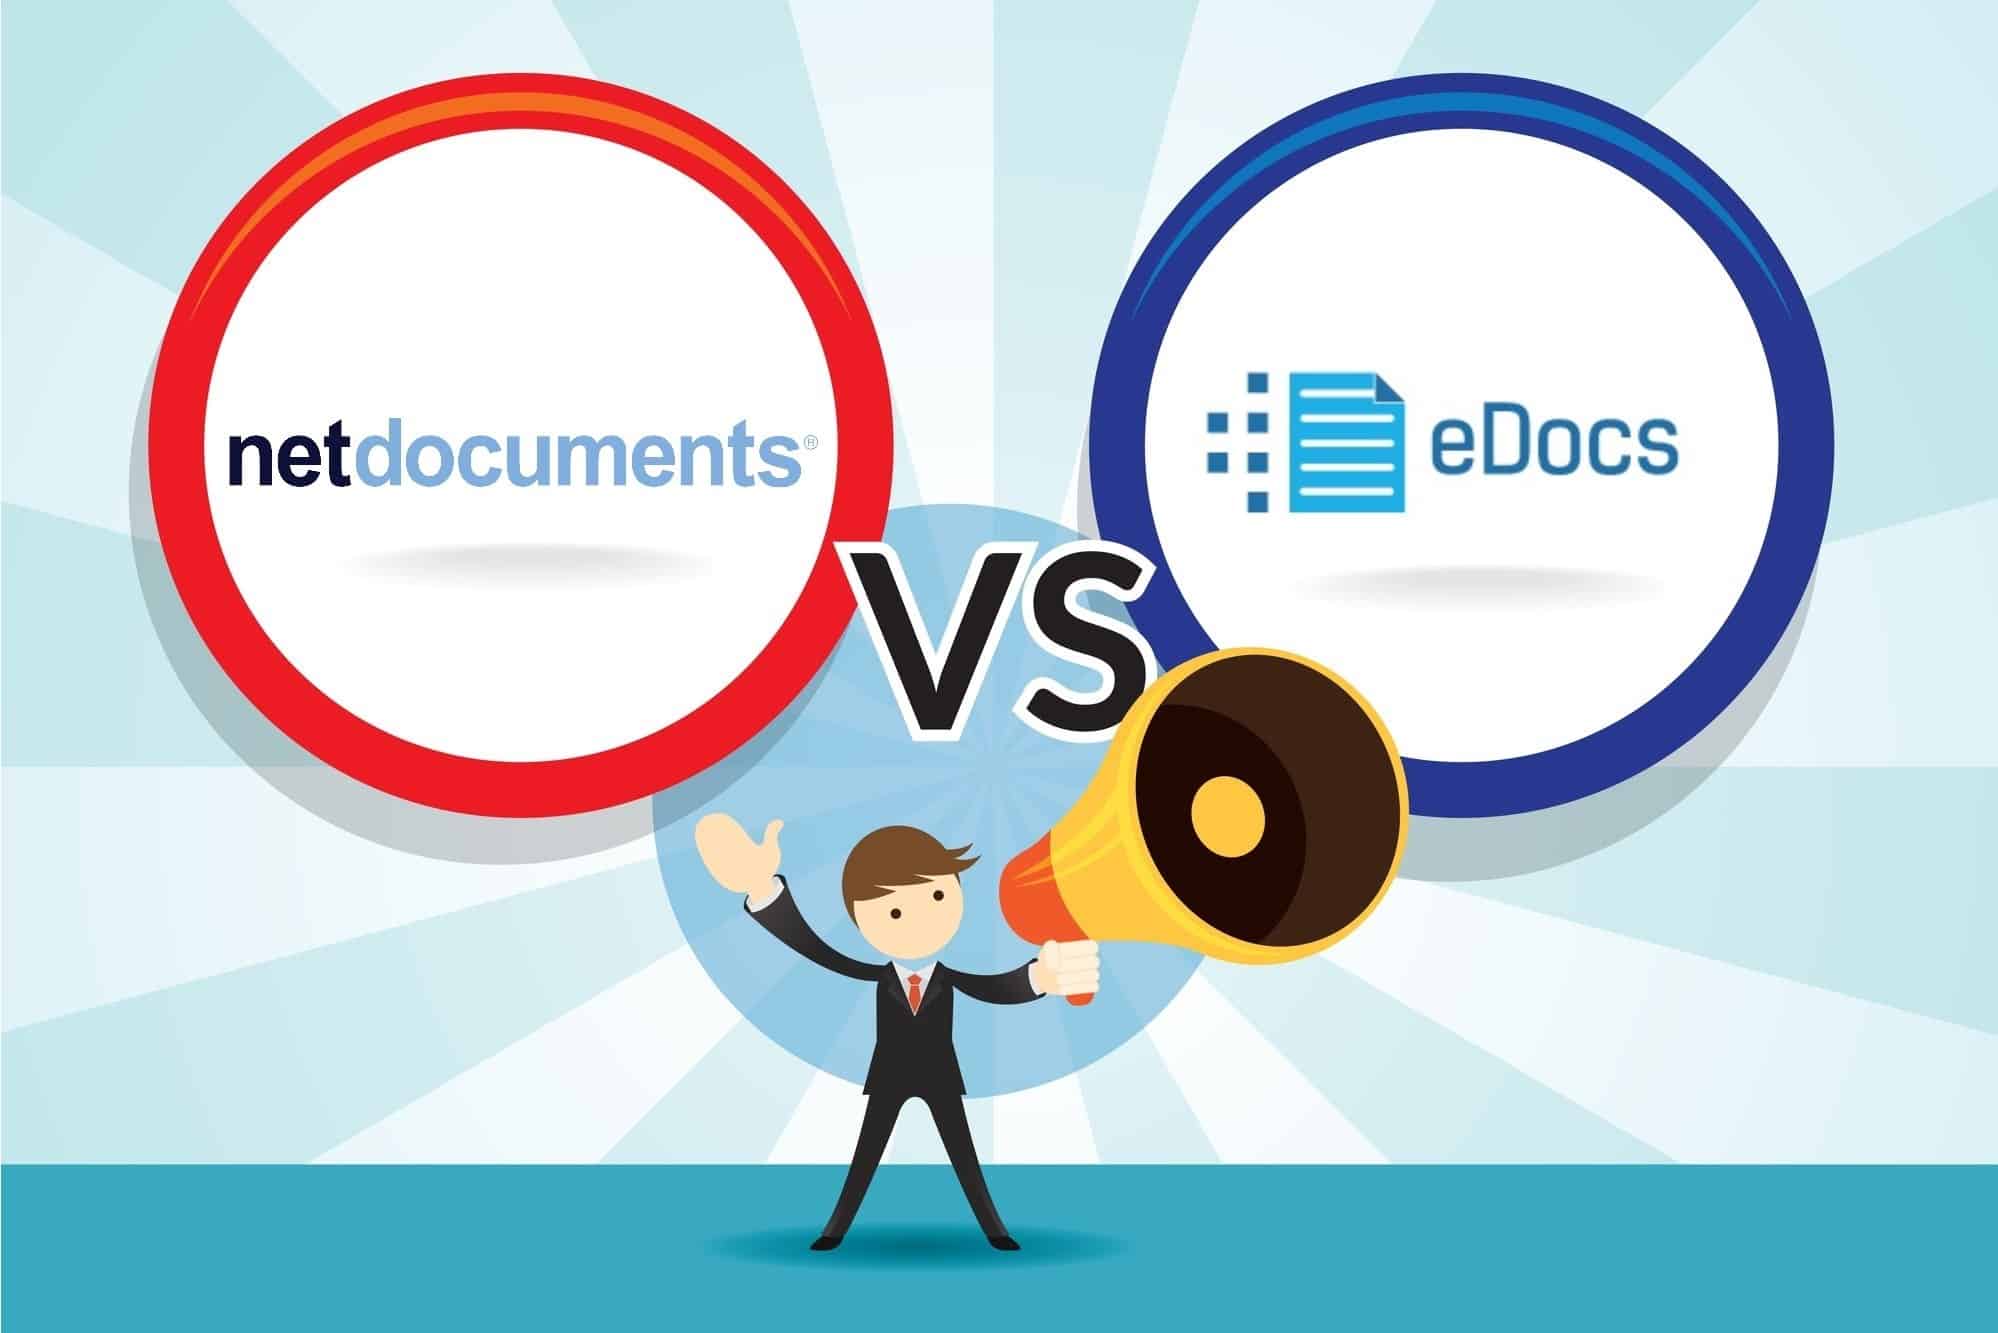 NetDocuments vs. eDocs